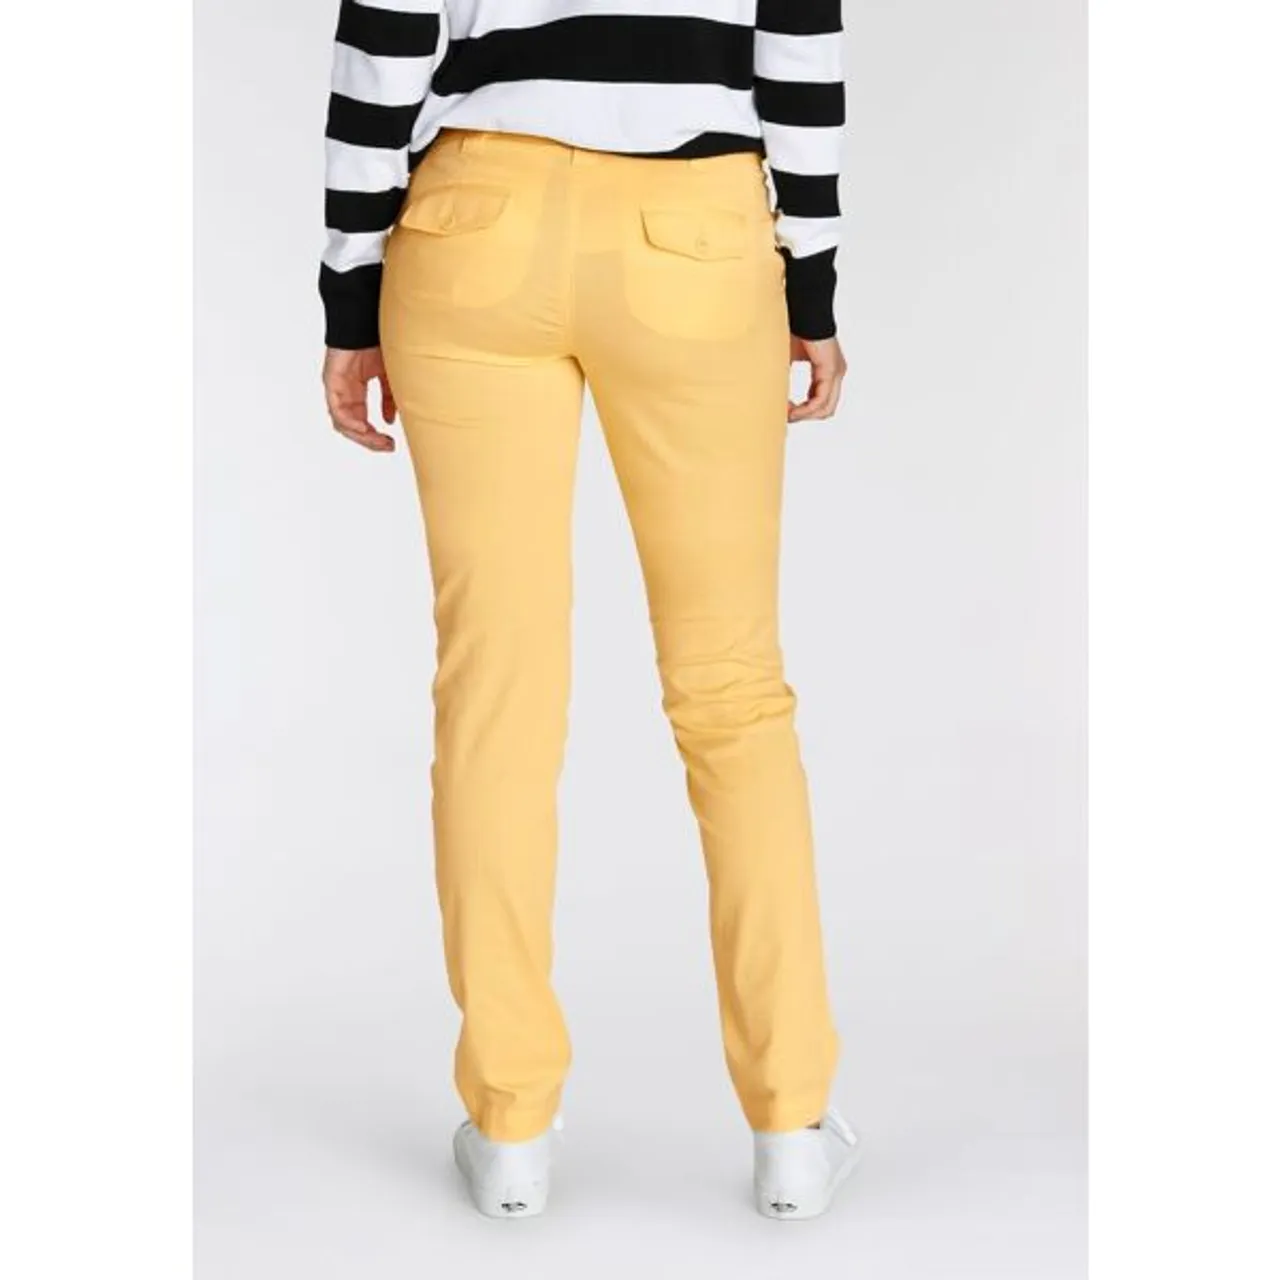 Chinohose AJC Gr. 40, N-Gr, gelb (vanille, gelb) Damen Hosen Stoffhosen in lässiger Form mit Pattentaschen